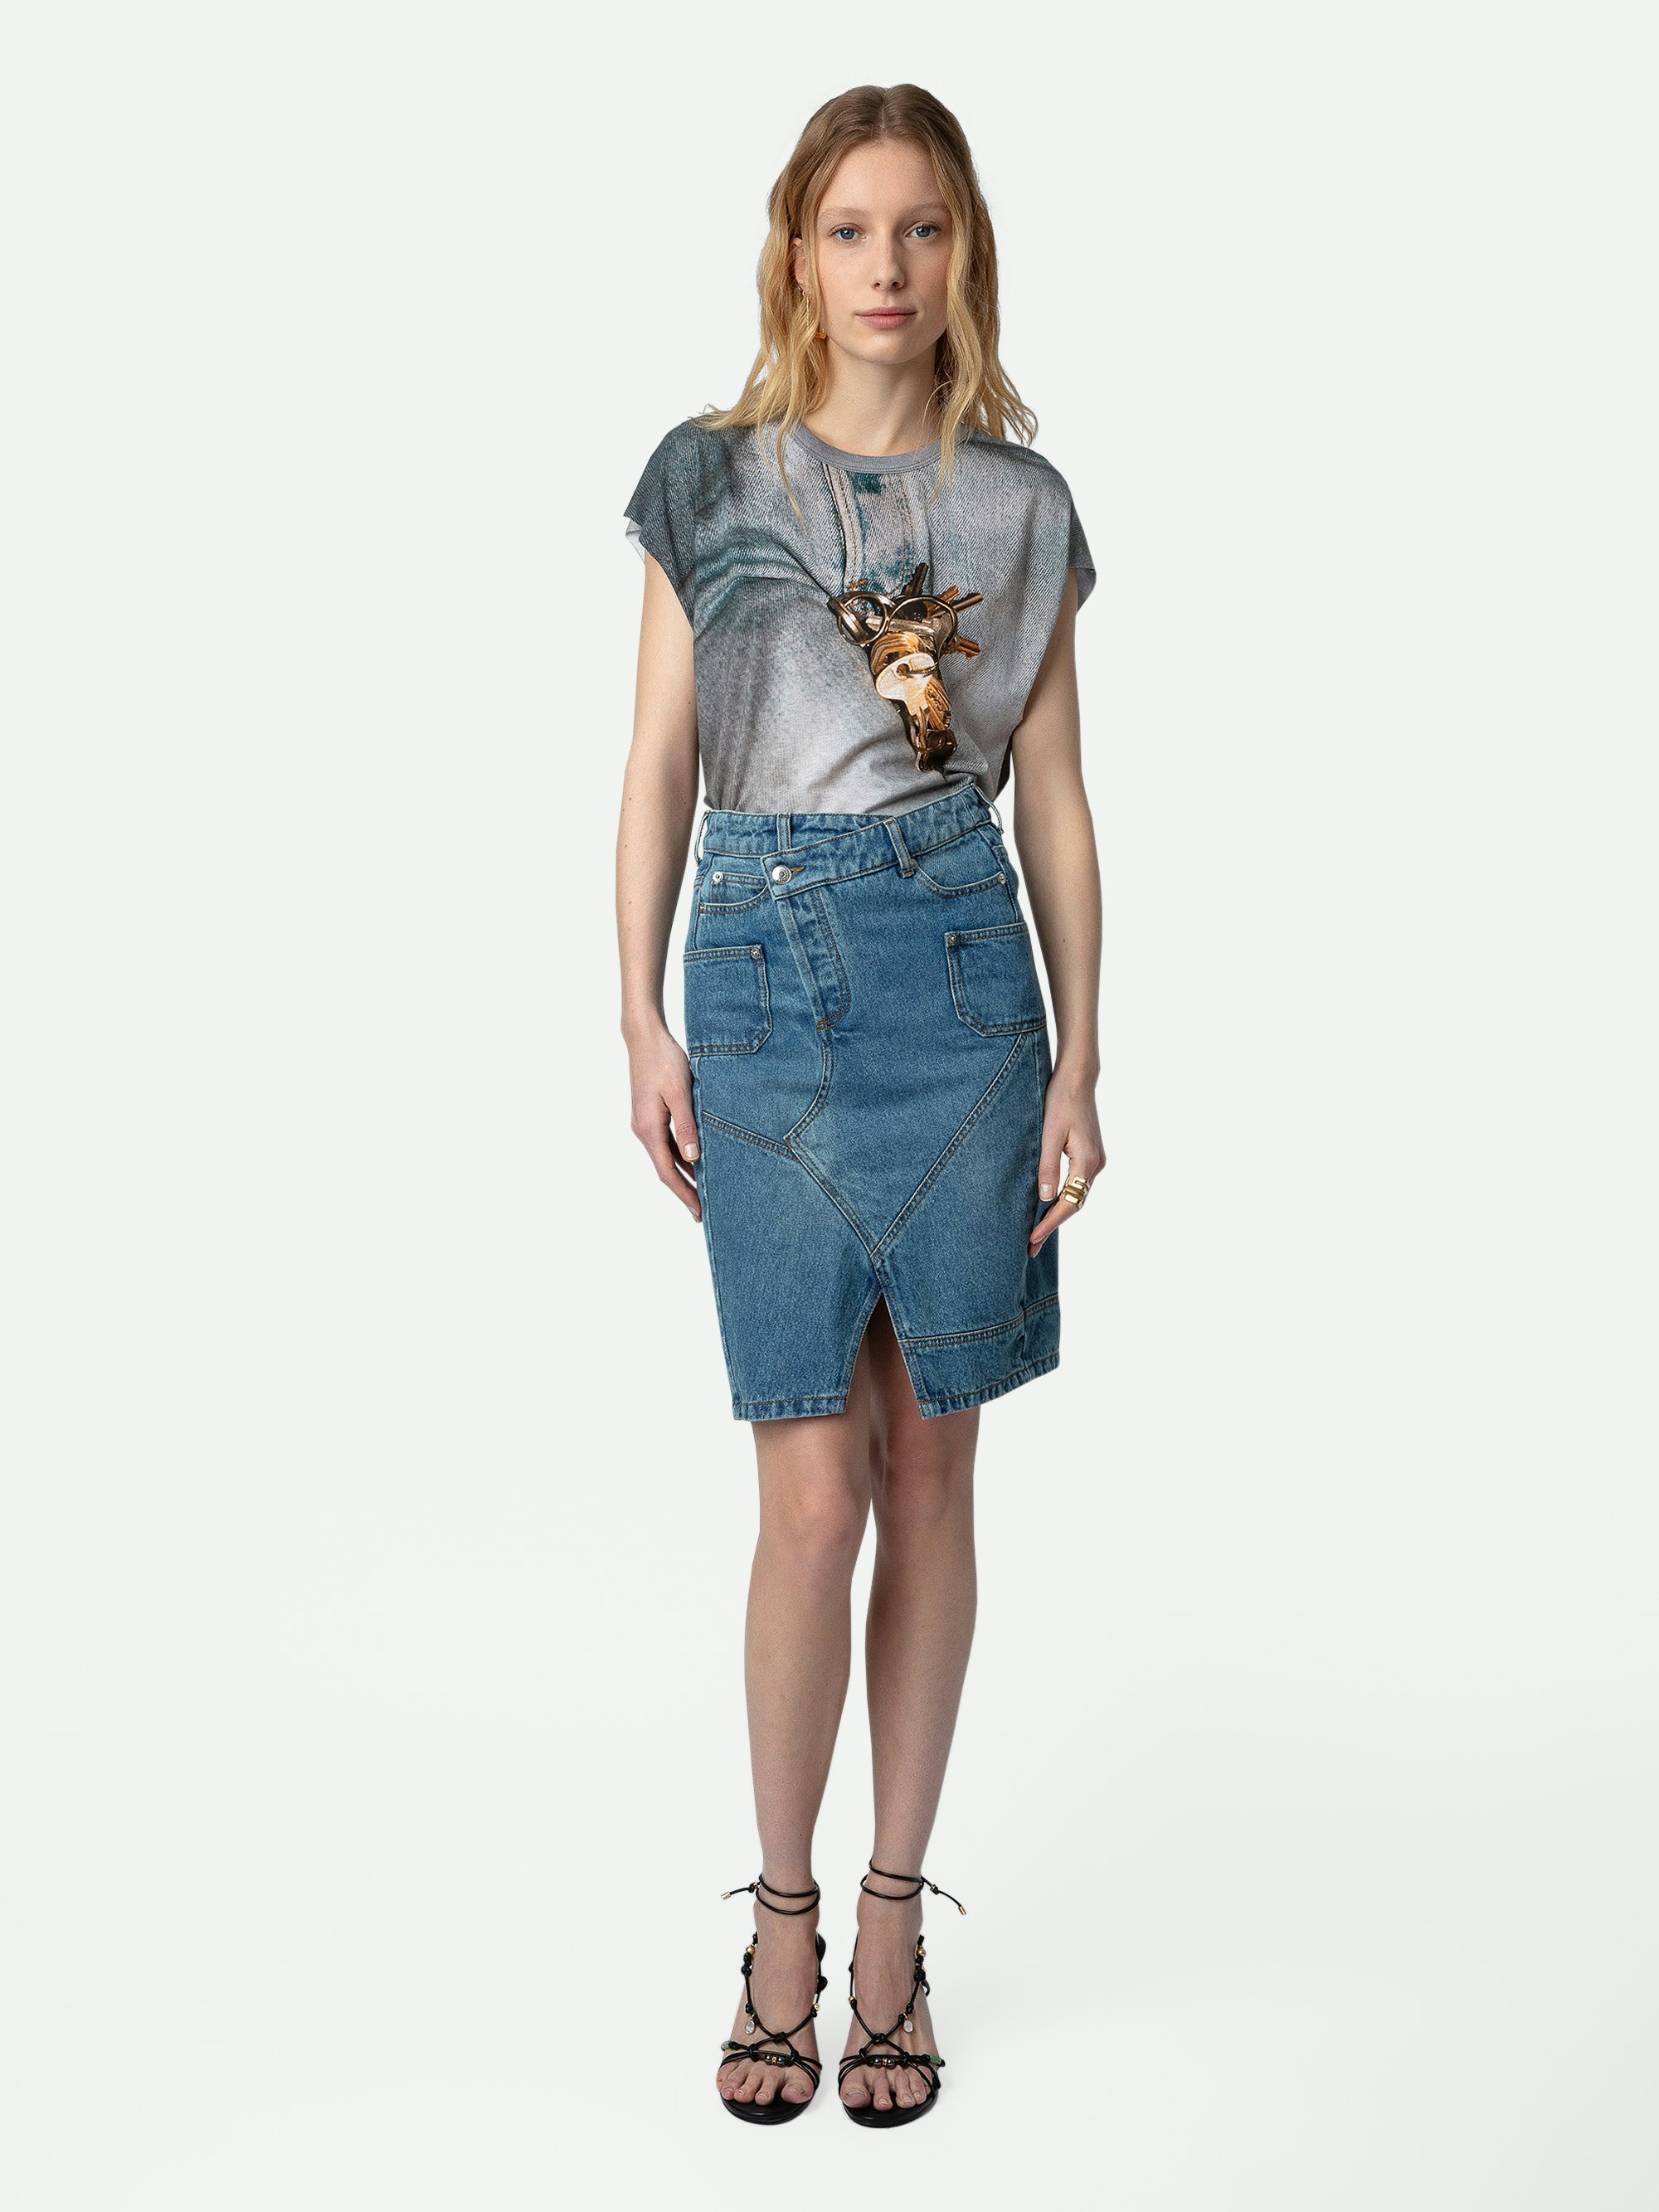 Camiseta de Tirantes Cecilia - Camiseta de tirantes de inspiración motera en color gris carbono con estampado de llave y bordes sin rematar.